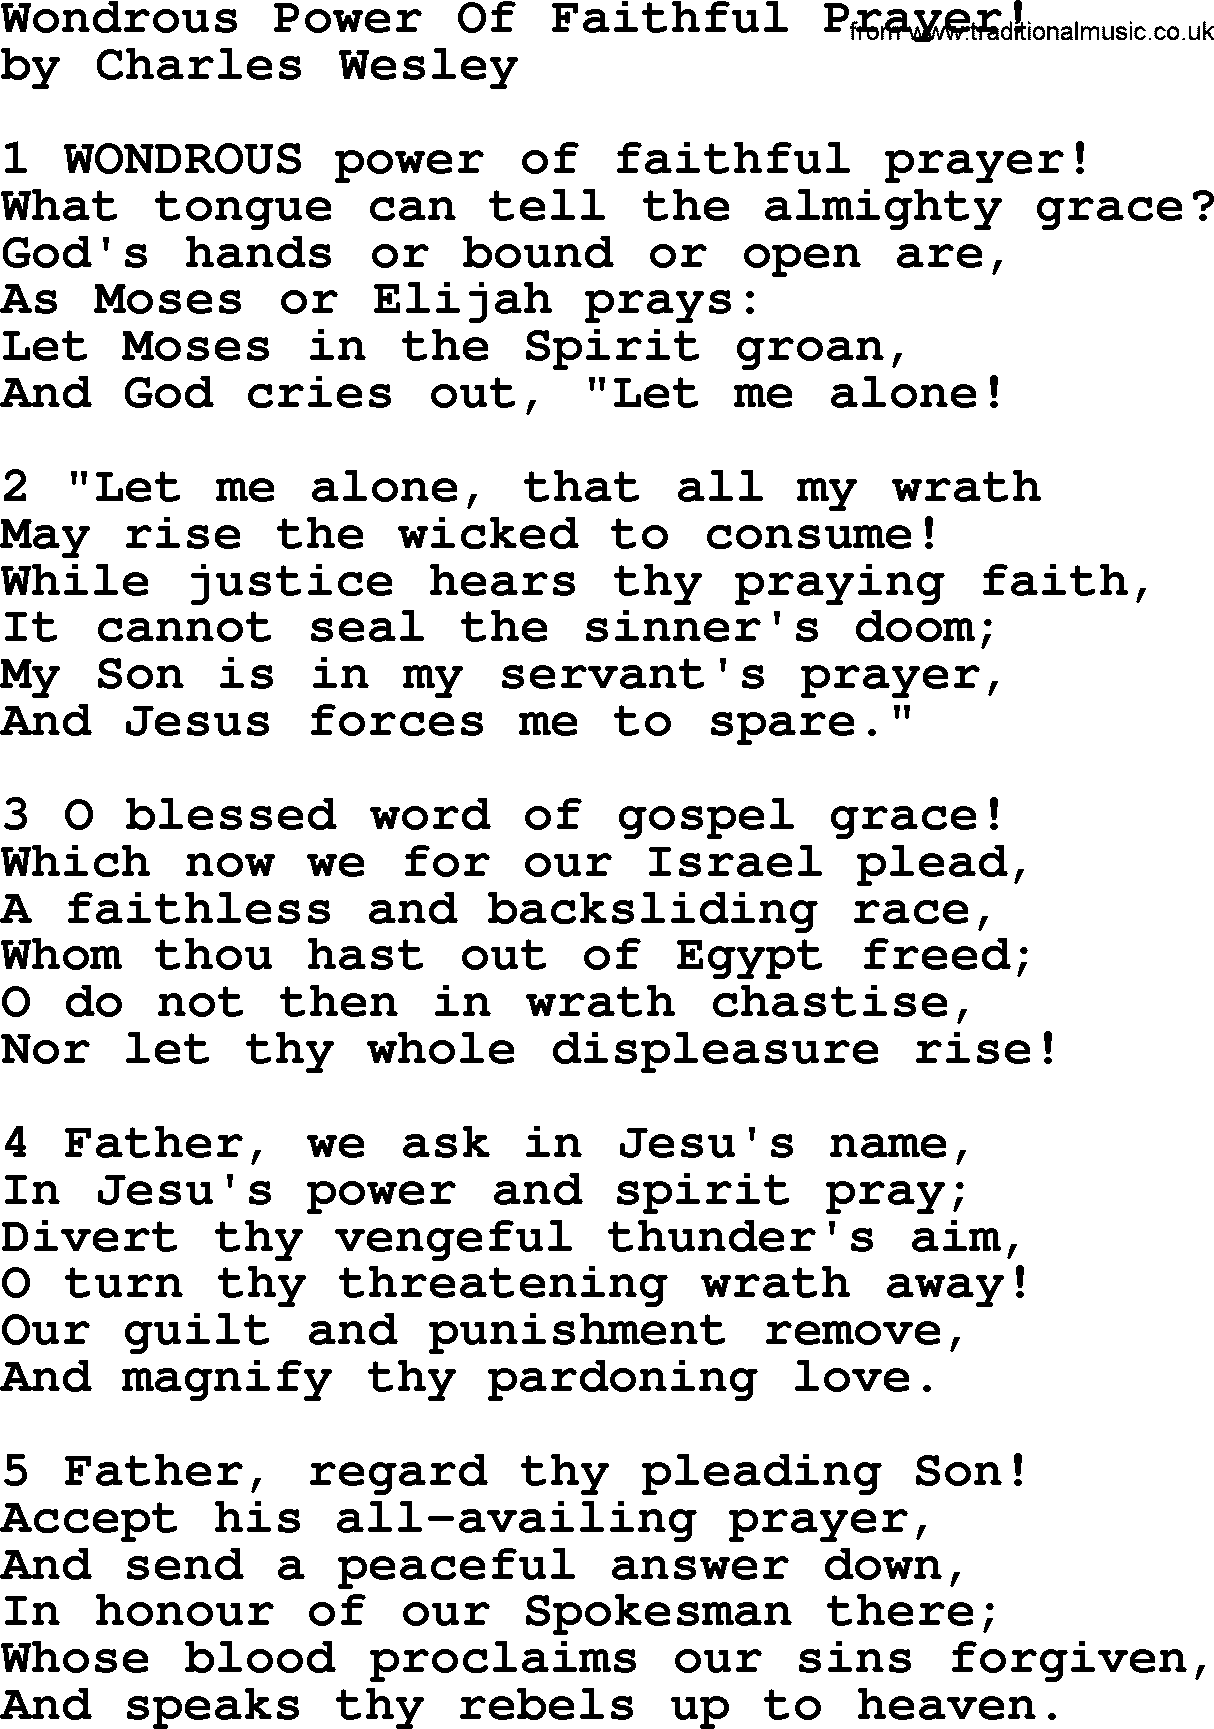 Charles Wesley hymn: Wondrous Power Of Faithful Prayer!, lyrics